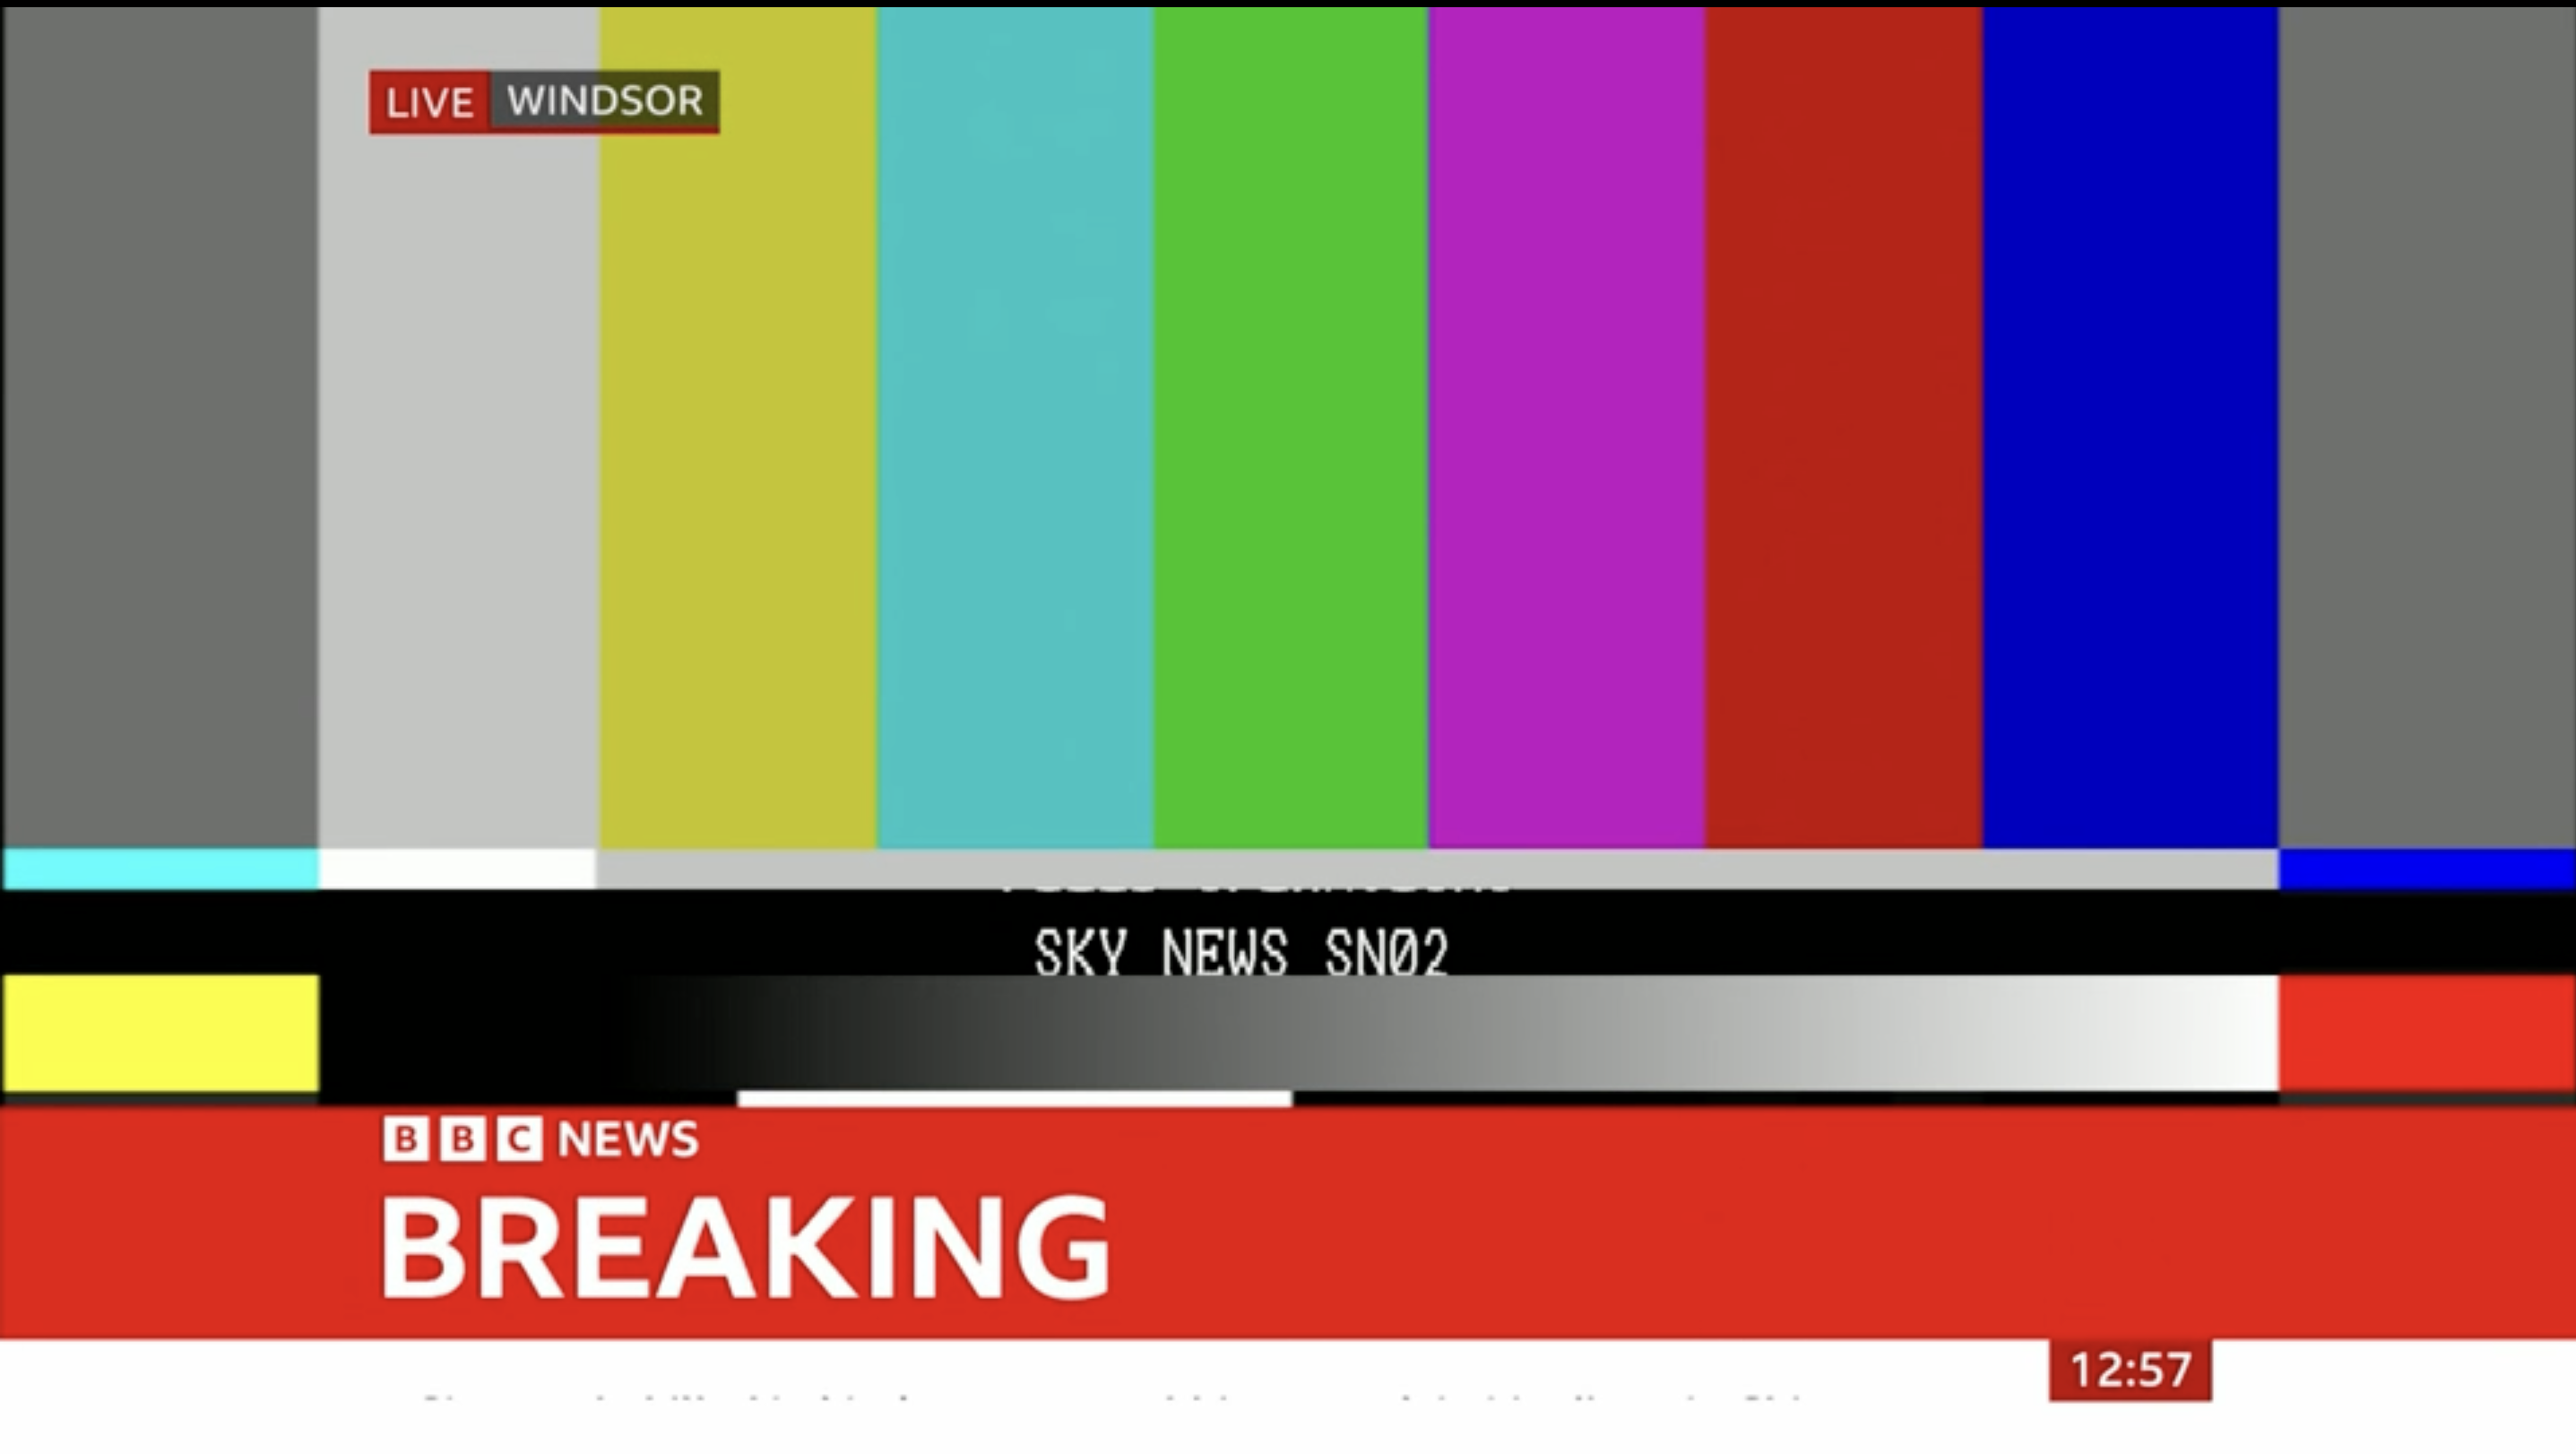 Bei BBC News gab es einen technischen Fehler, der Online-Zuschauer dazu veranlasste, den Sender anzugreifen